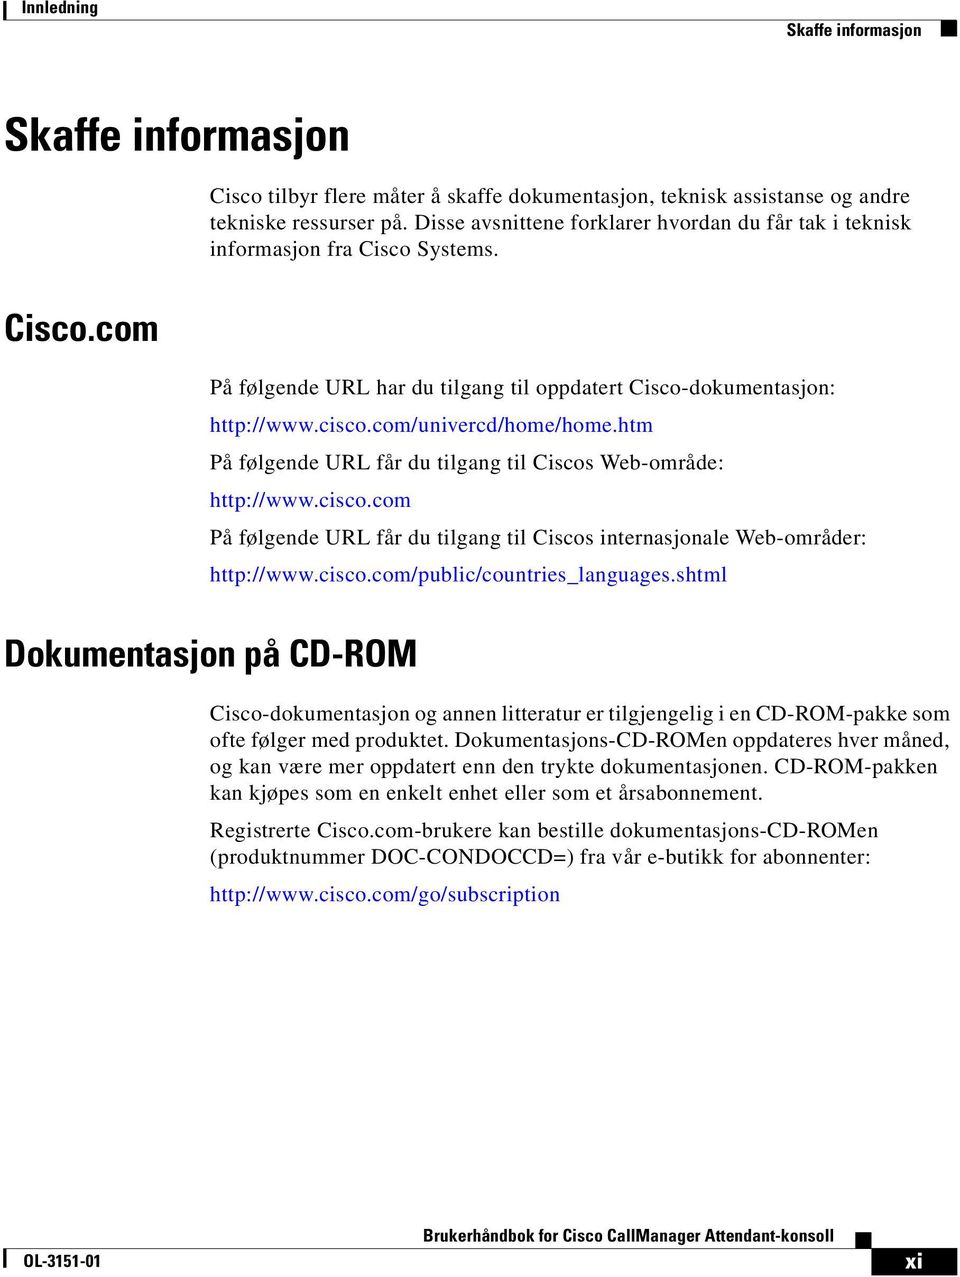 com/univercd/home/home.htm På følgende URL får du tilgang til Ciscos Web-område: http://www.cisco.com På følgende URL får du tilgang til Ciscos internasjonale Web-områder: http://www.cisco.com/public/countries_languages.